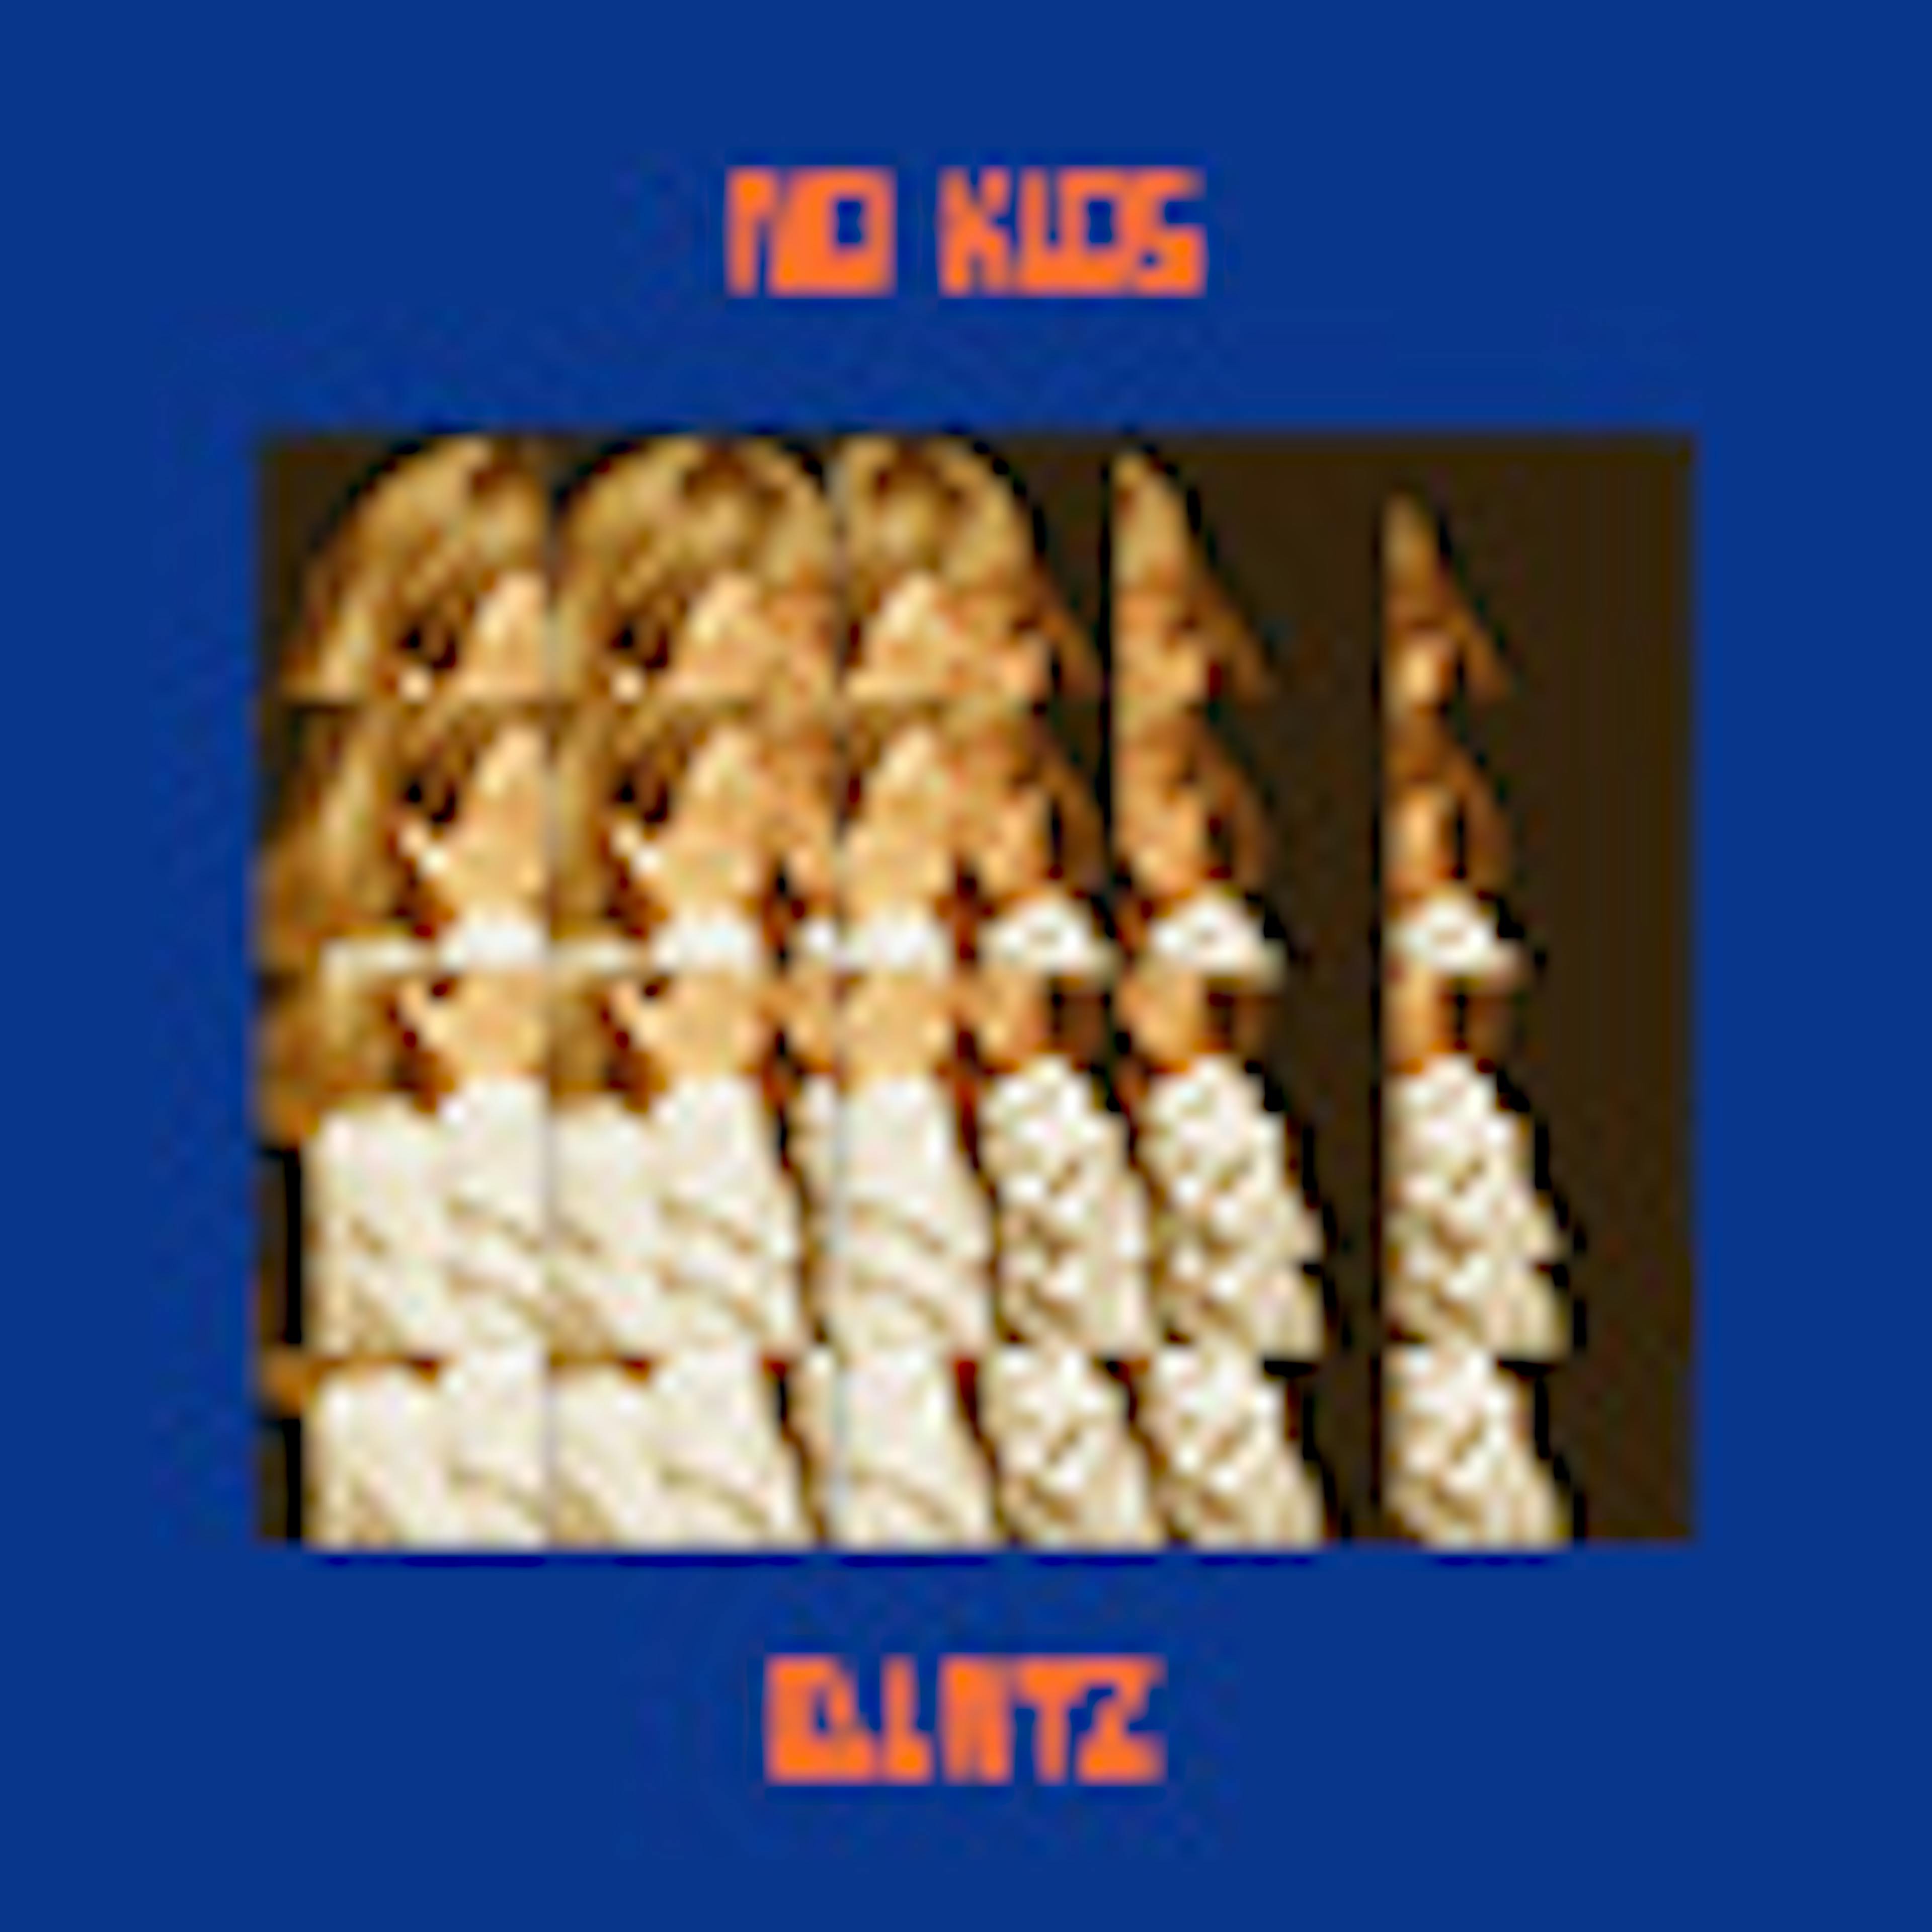 No Kids album cover